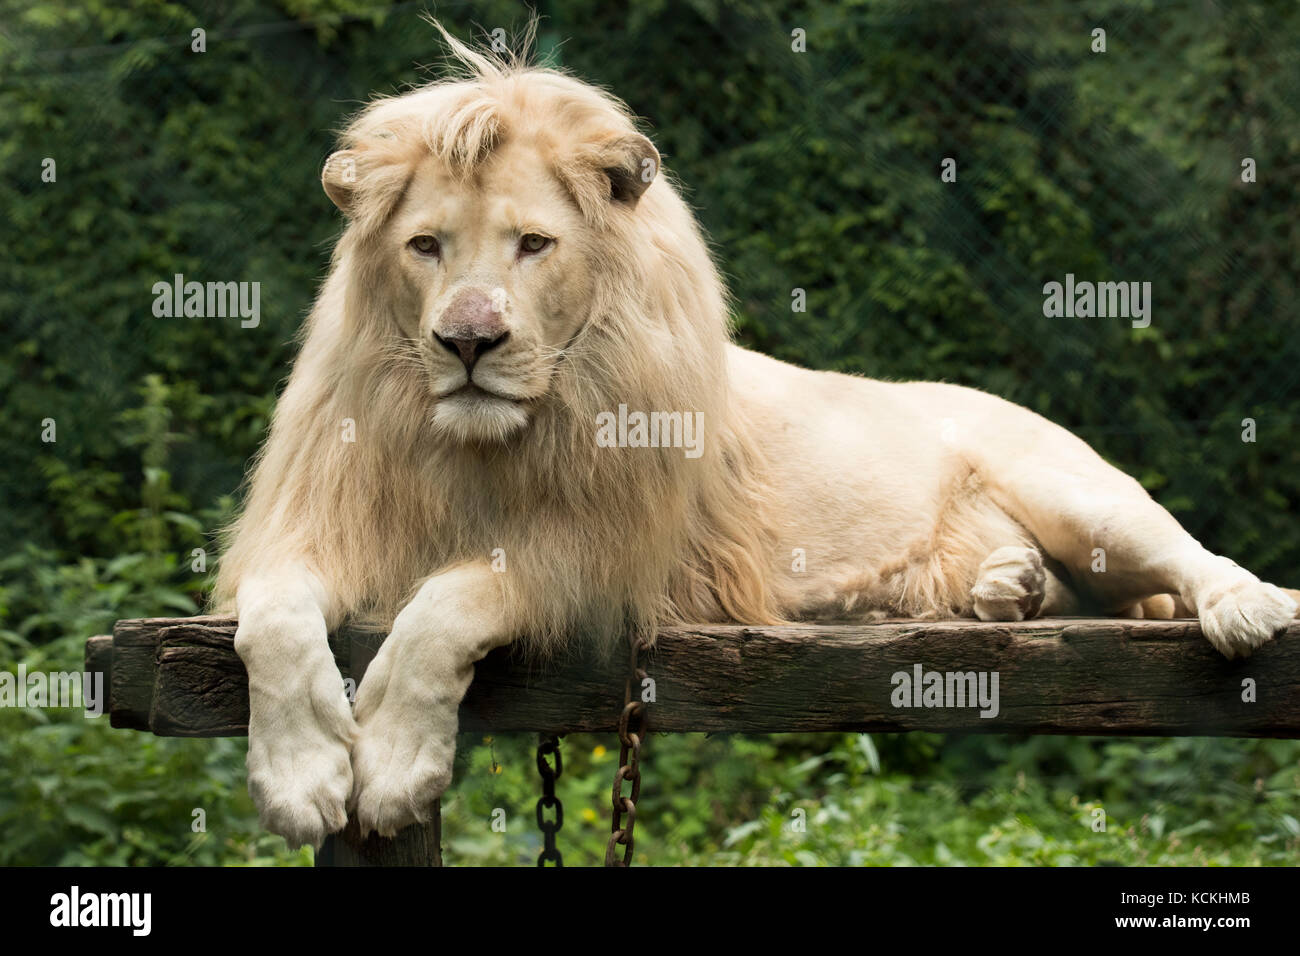 Roaring White Lion Banque D Image Et Photos Alamy